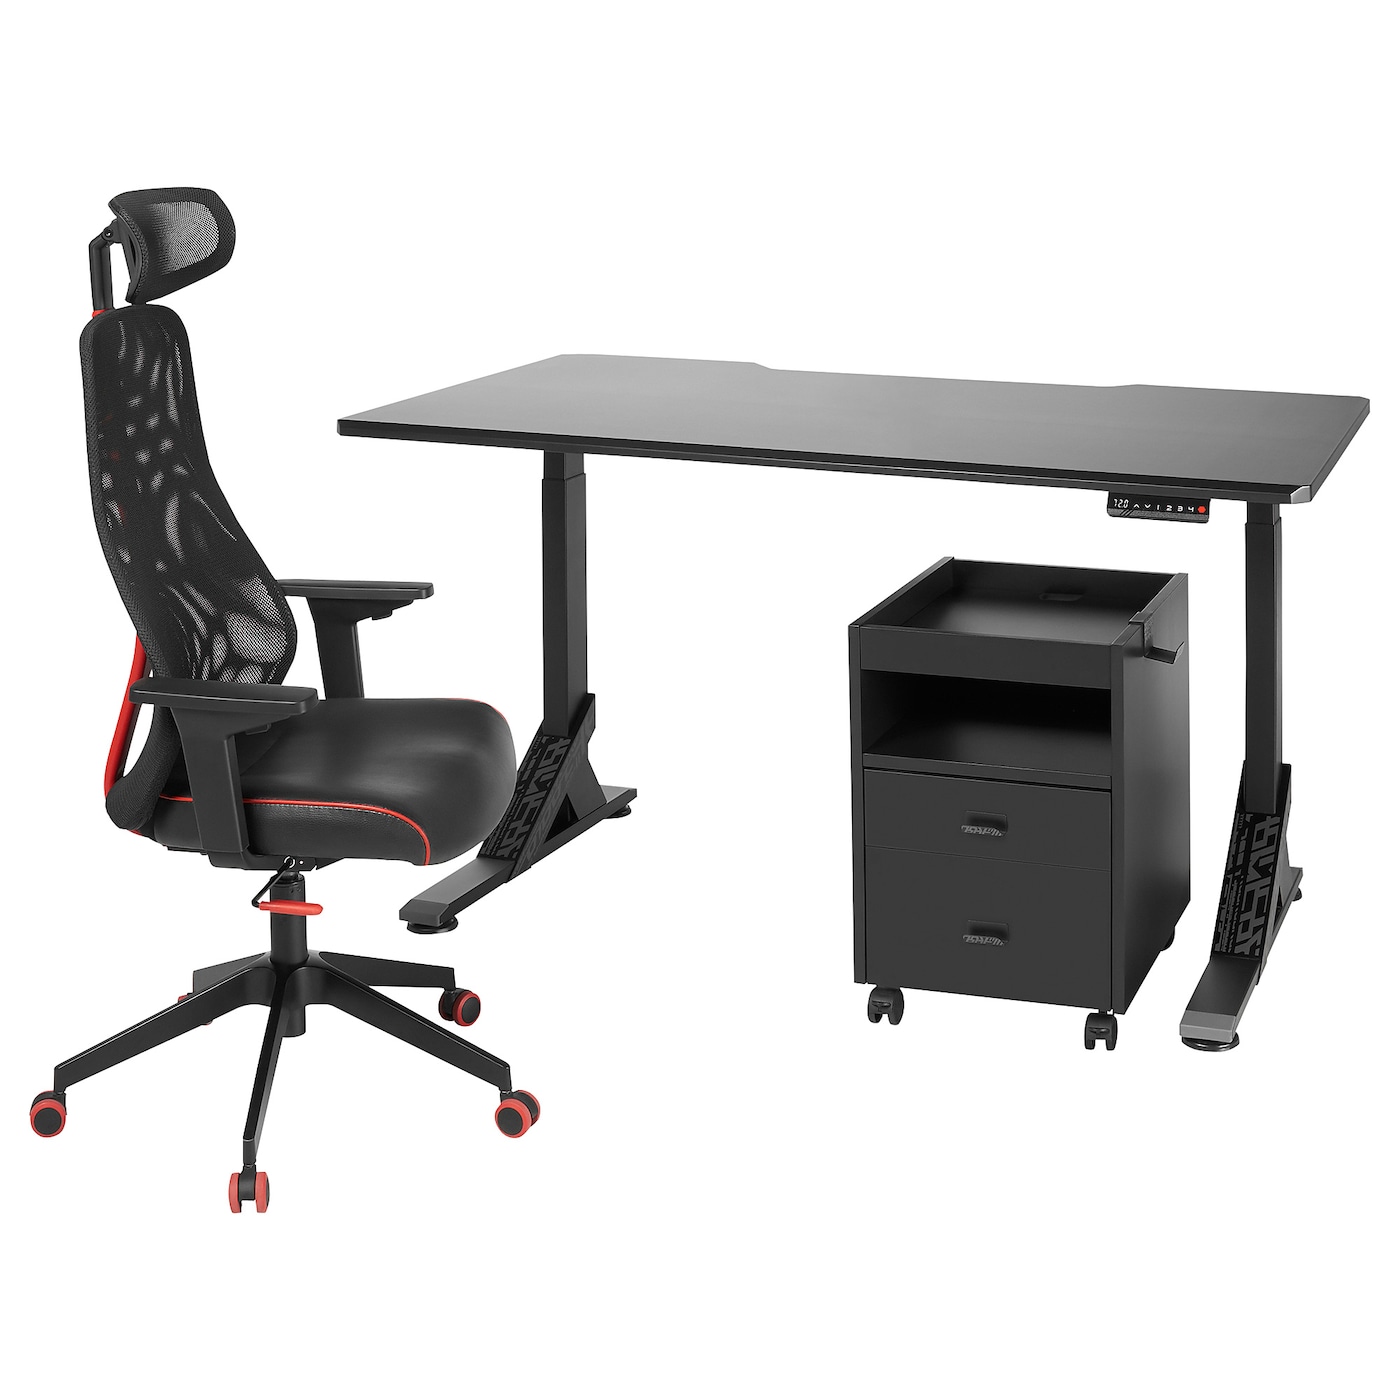 Игровой стол и стул с тумбой - IKEA UPPSPEL/MATCHSPEL, черный/красный, 140х80х140-180 см, УППСПЕЛ/МАТЧСПЕЛ ИКЕА